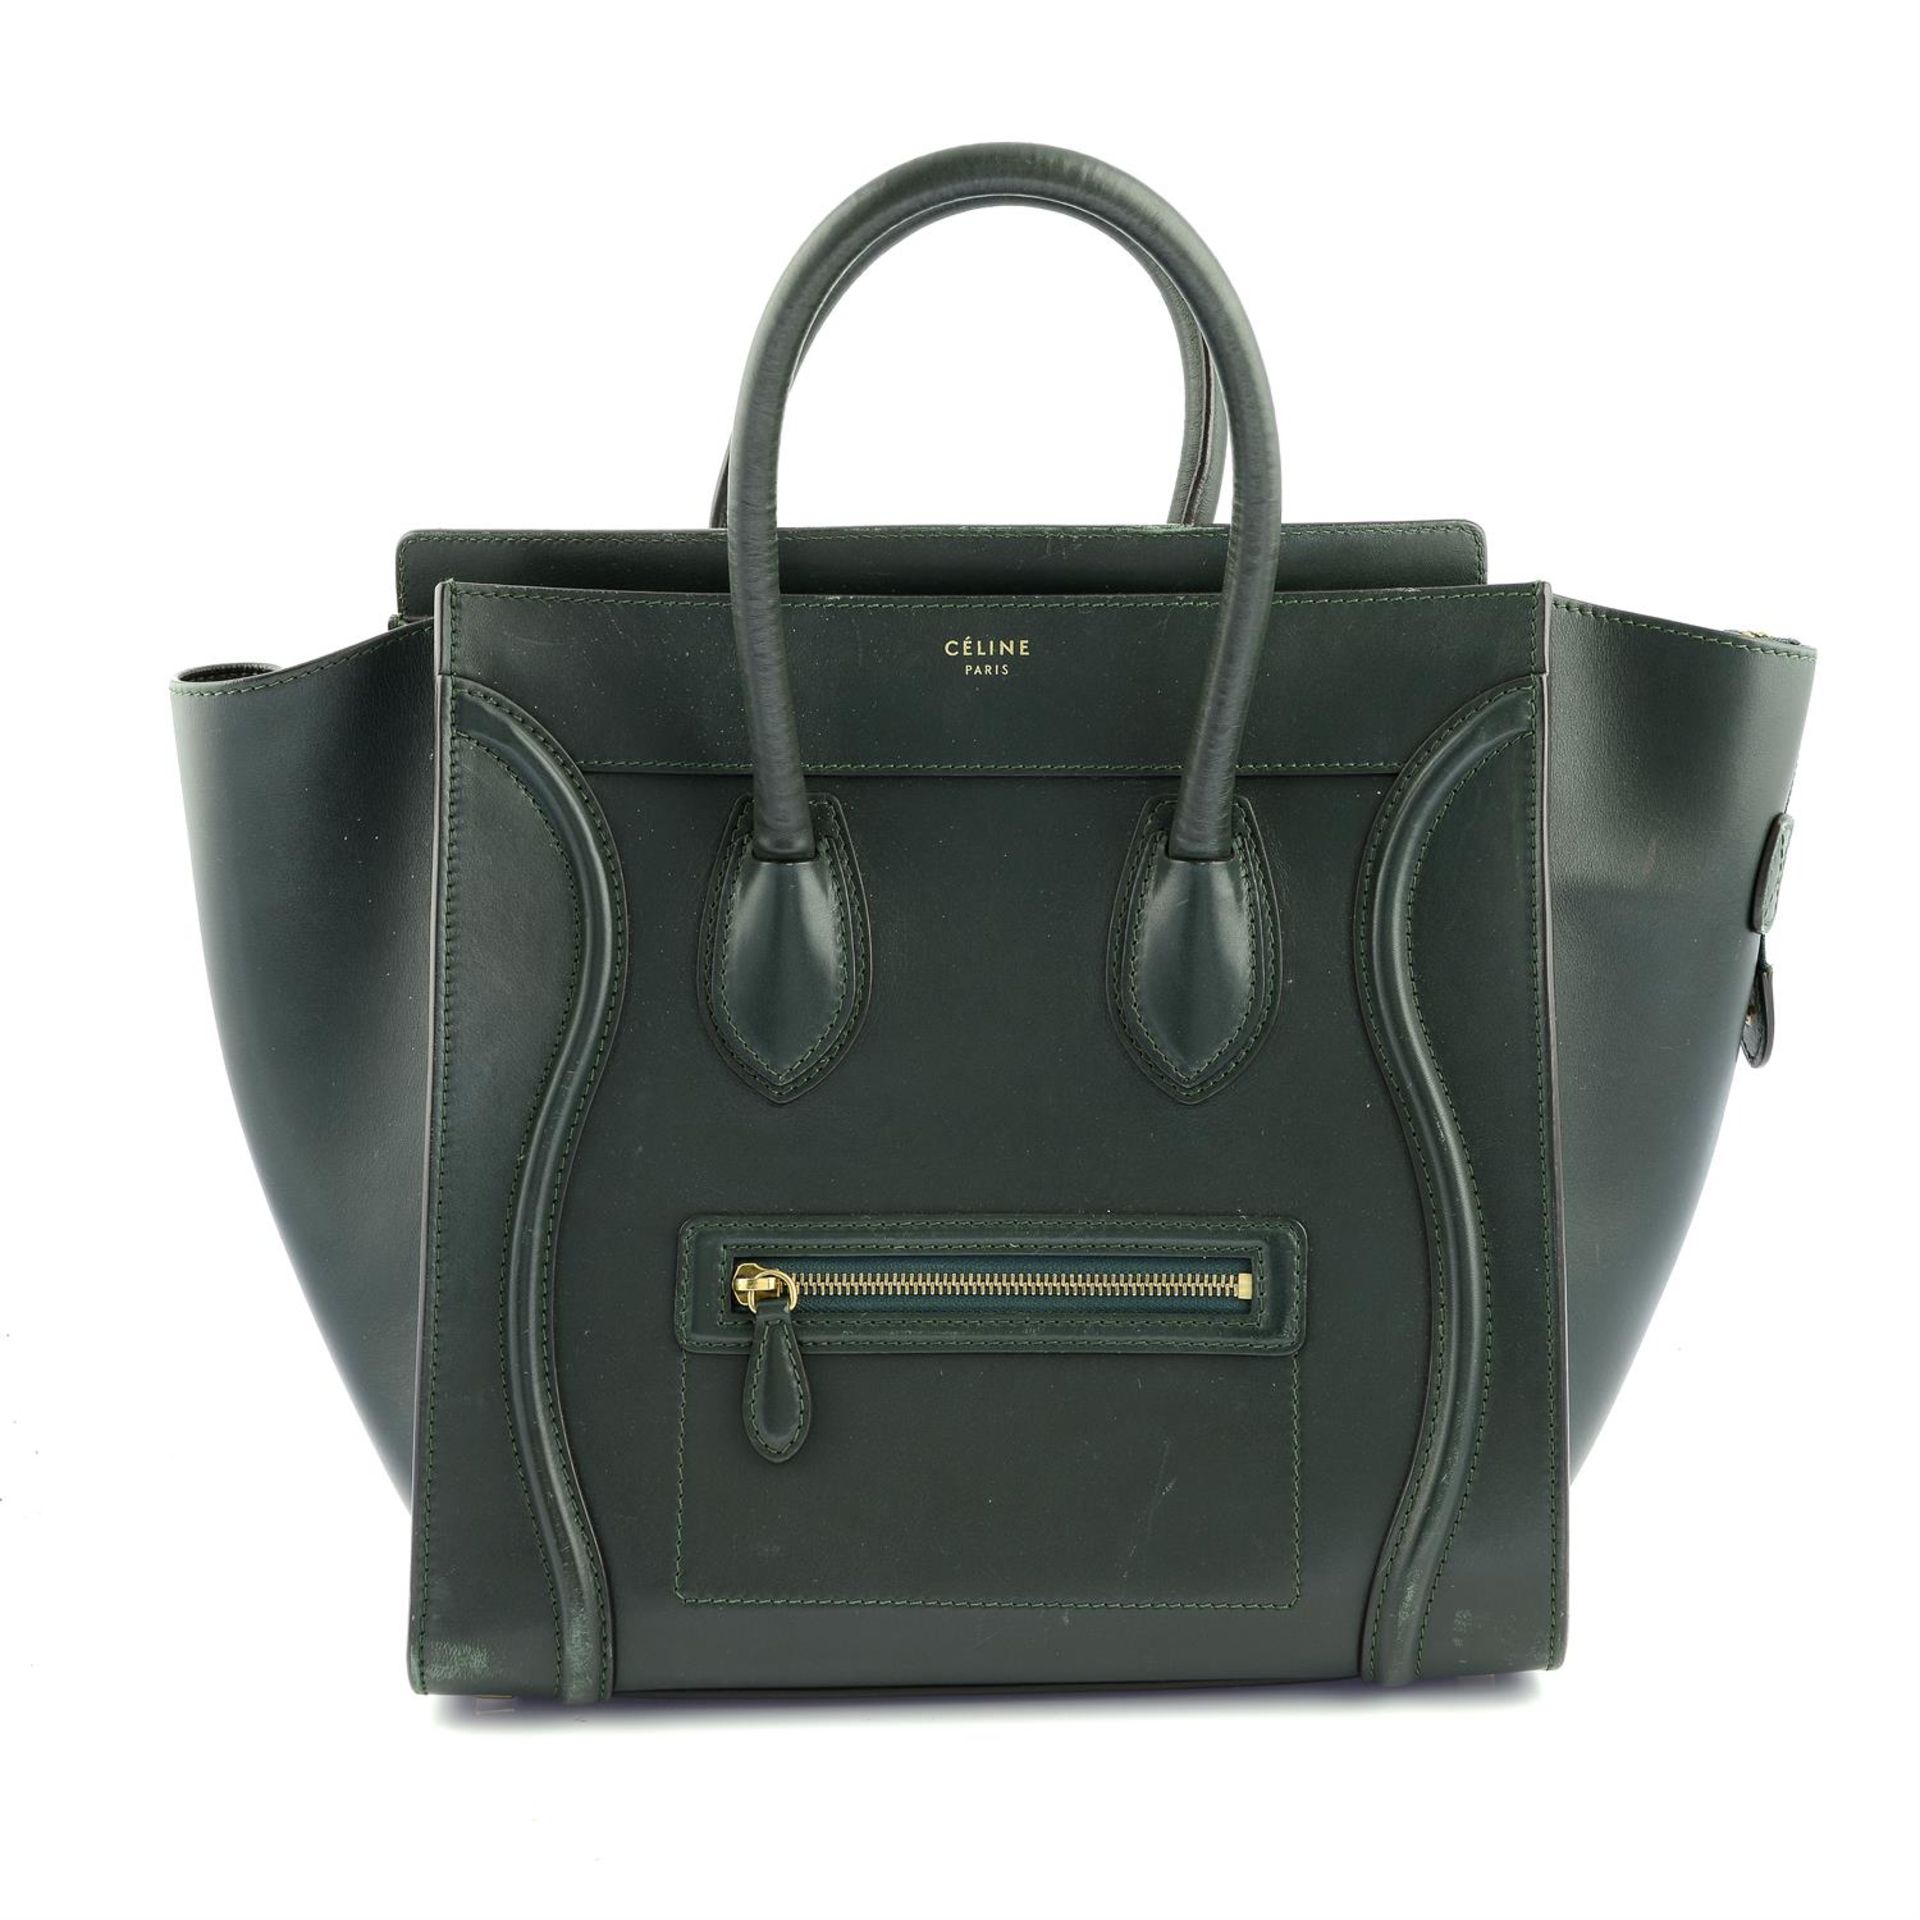 CÉLINE- a green Phantom Tote handbag.